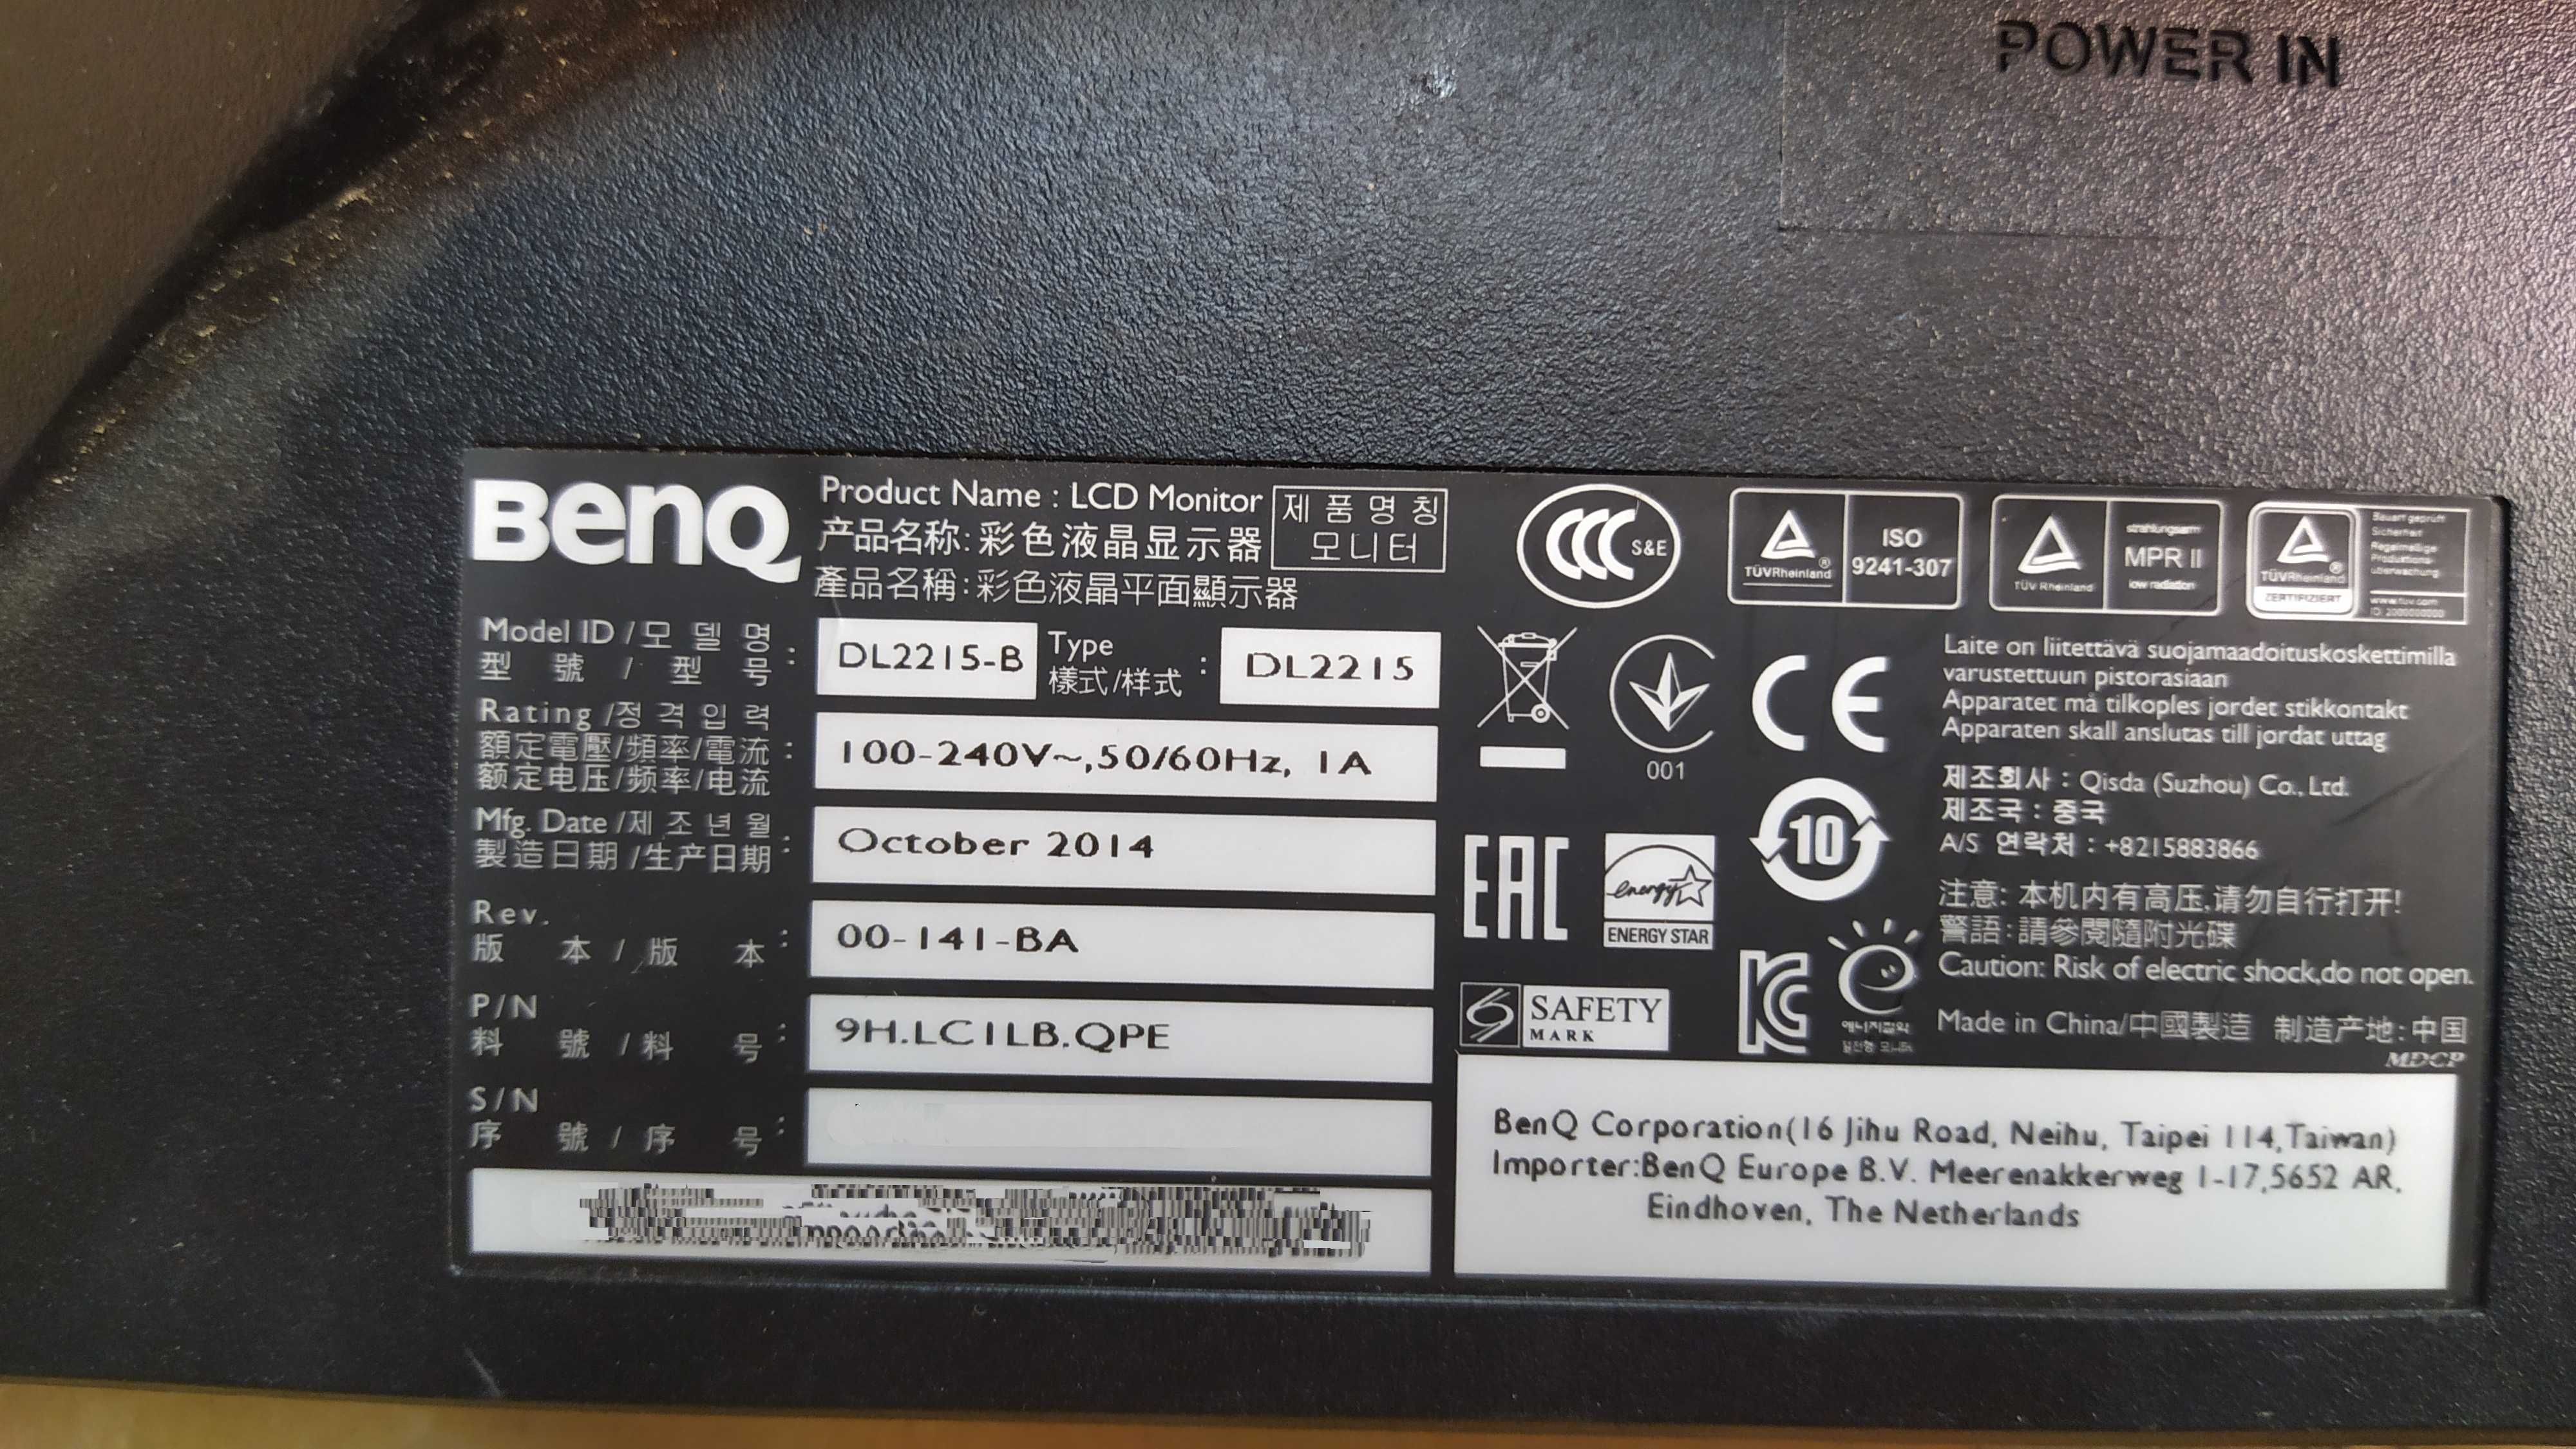 BenQ DL2215-B DVI VGA битая матрица монитор 22" дюйма led подсветка